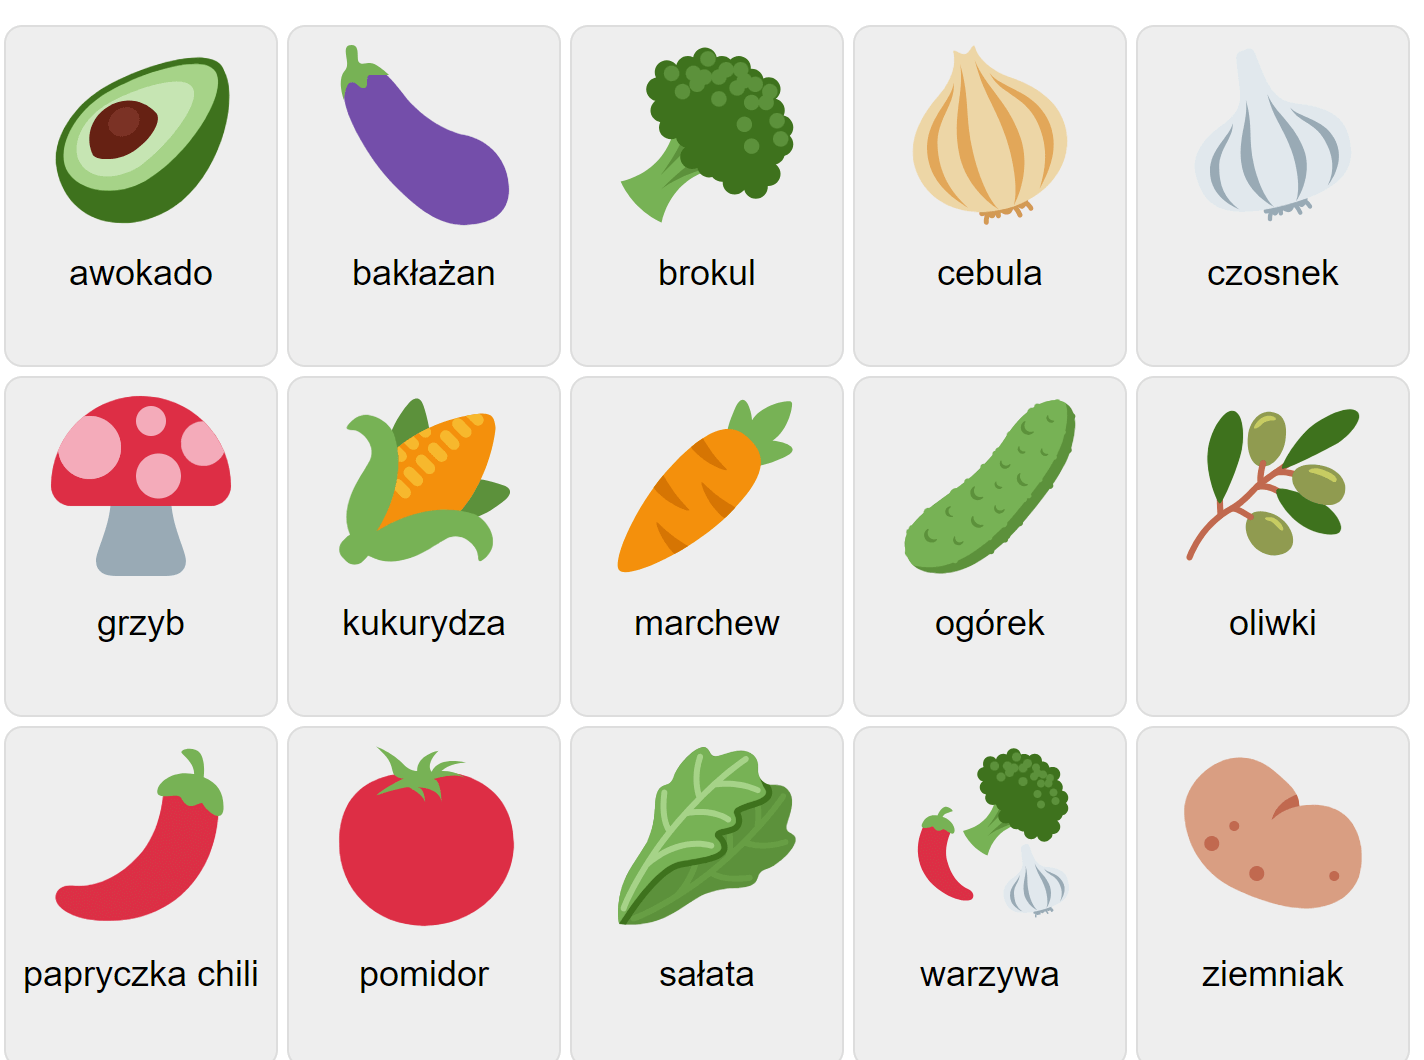 Grönsaker på polska